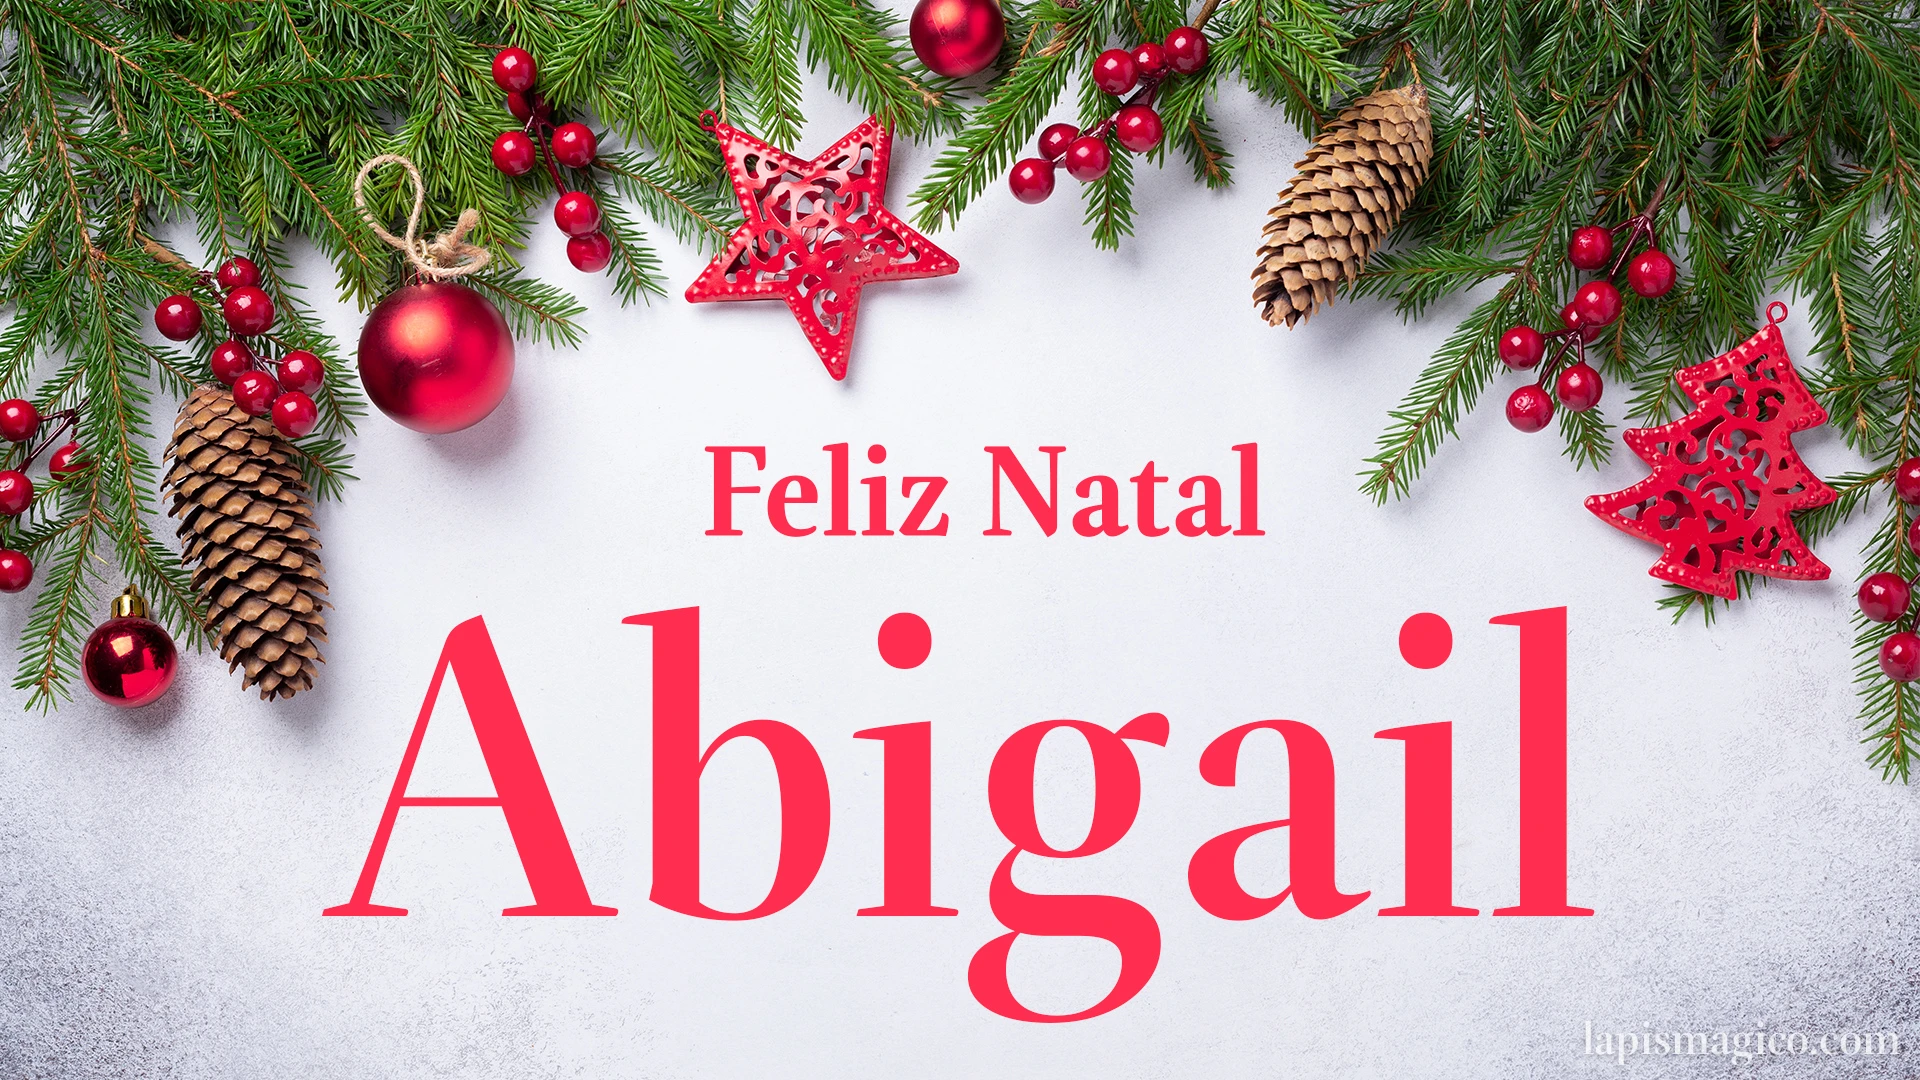 Oh Abigail, cinco postais de Feliz Natal Postal com o teu nome